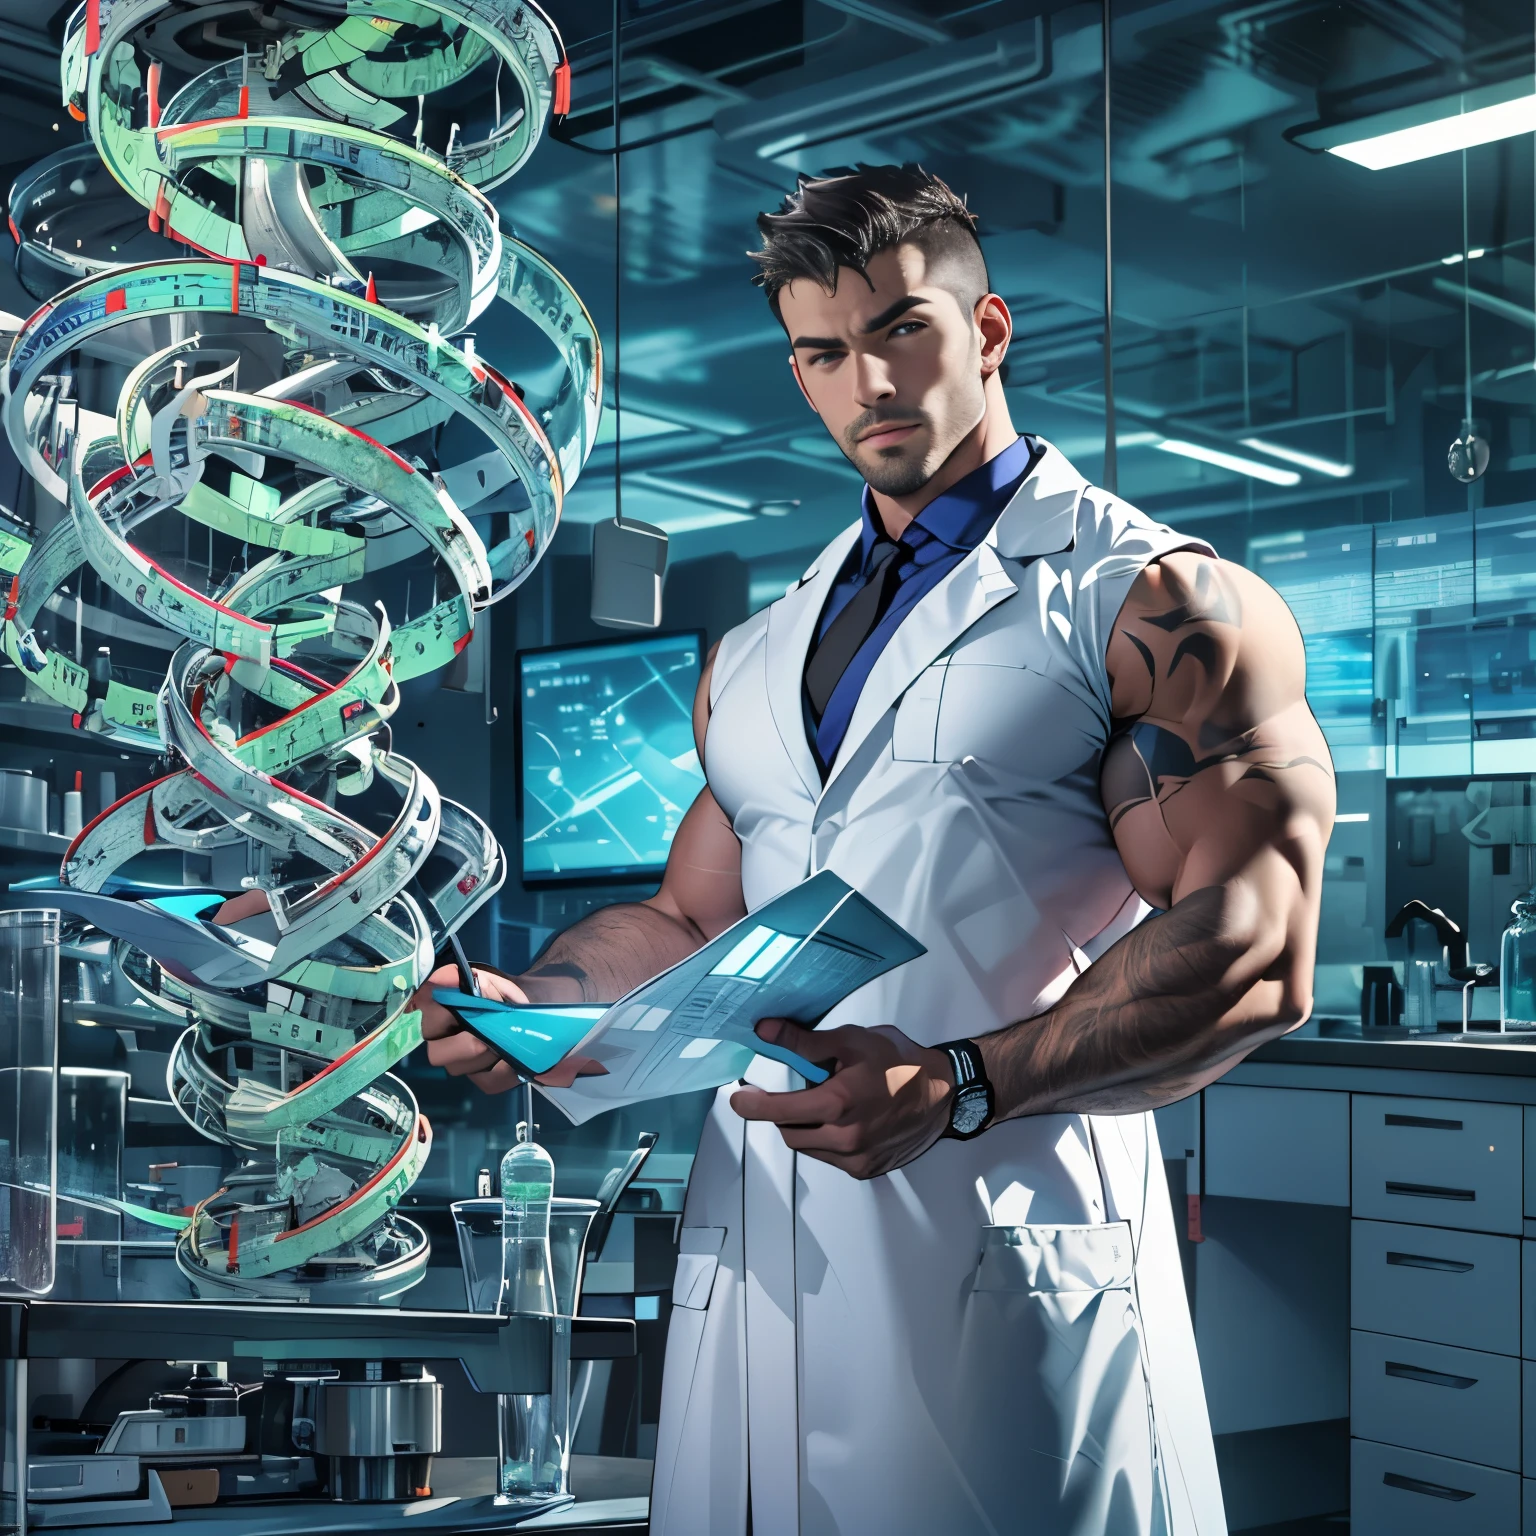 穿著暴露的實驗室外套的英俊科學家, 肌肉發達的, 檢查 DNA 螺旋模型, 未來實驗室環境, 專注的, 皮膚很好, 大凸起, 大肌肉